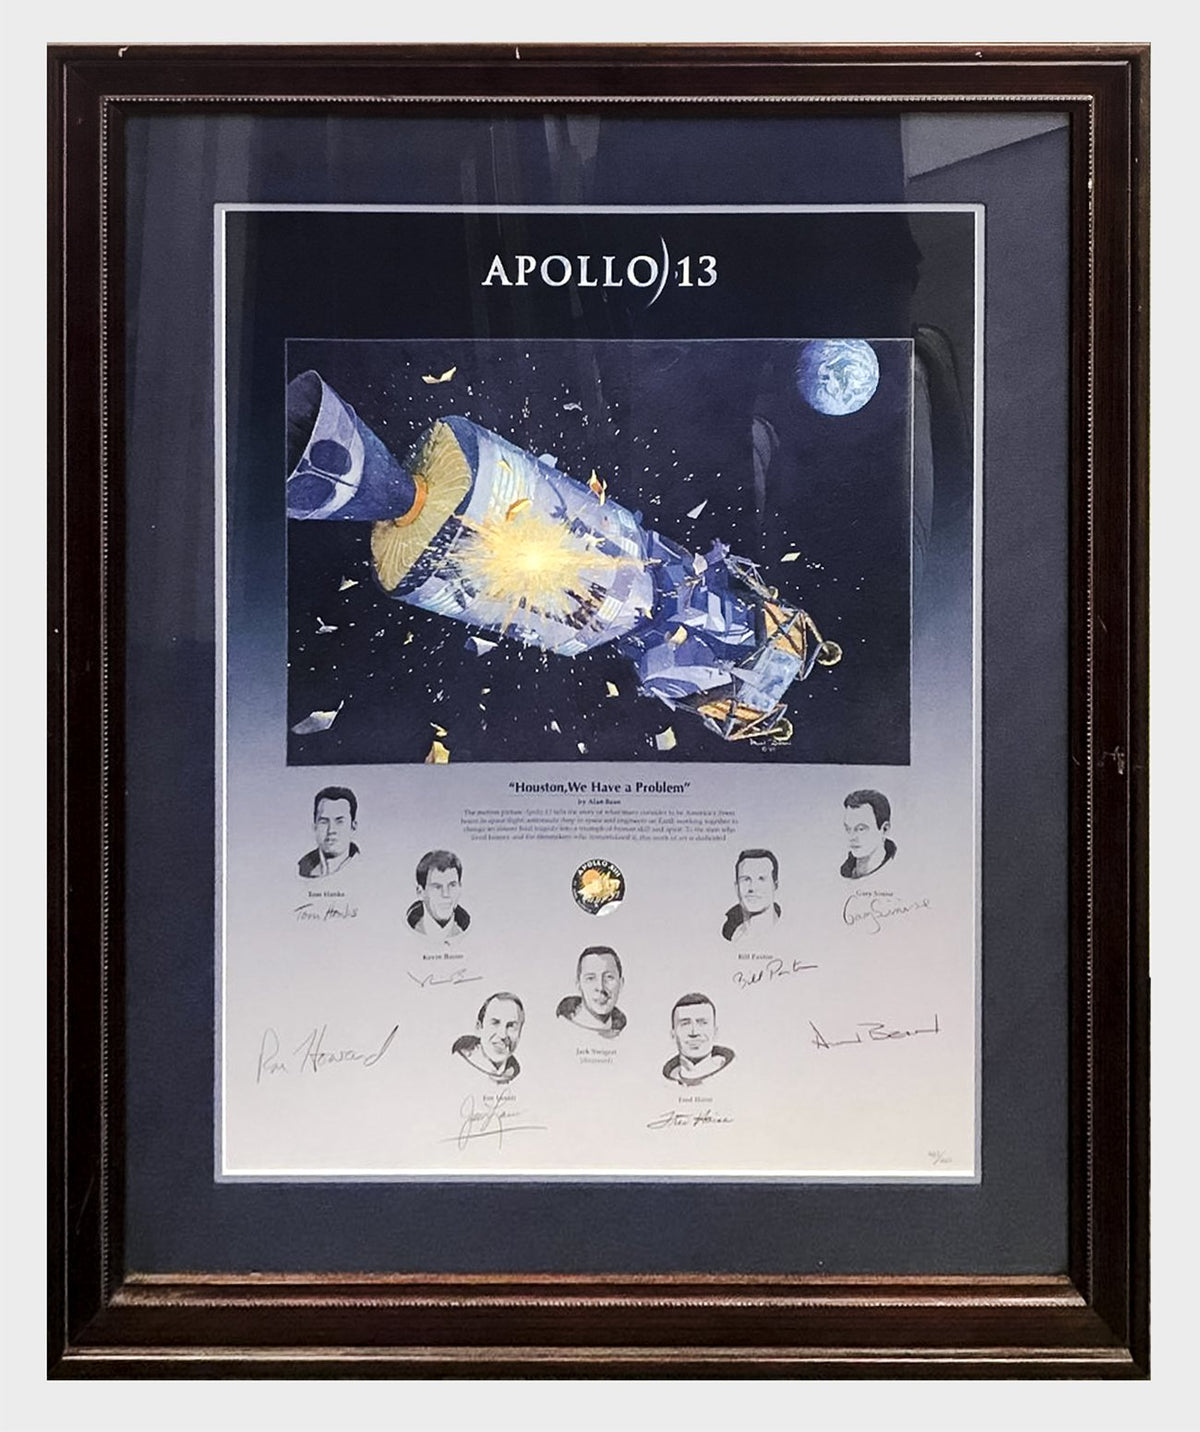 Hot Memorabilia: Apollo 13 Limited Edition Lithograph